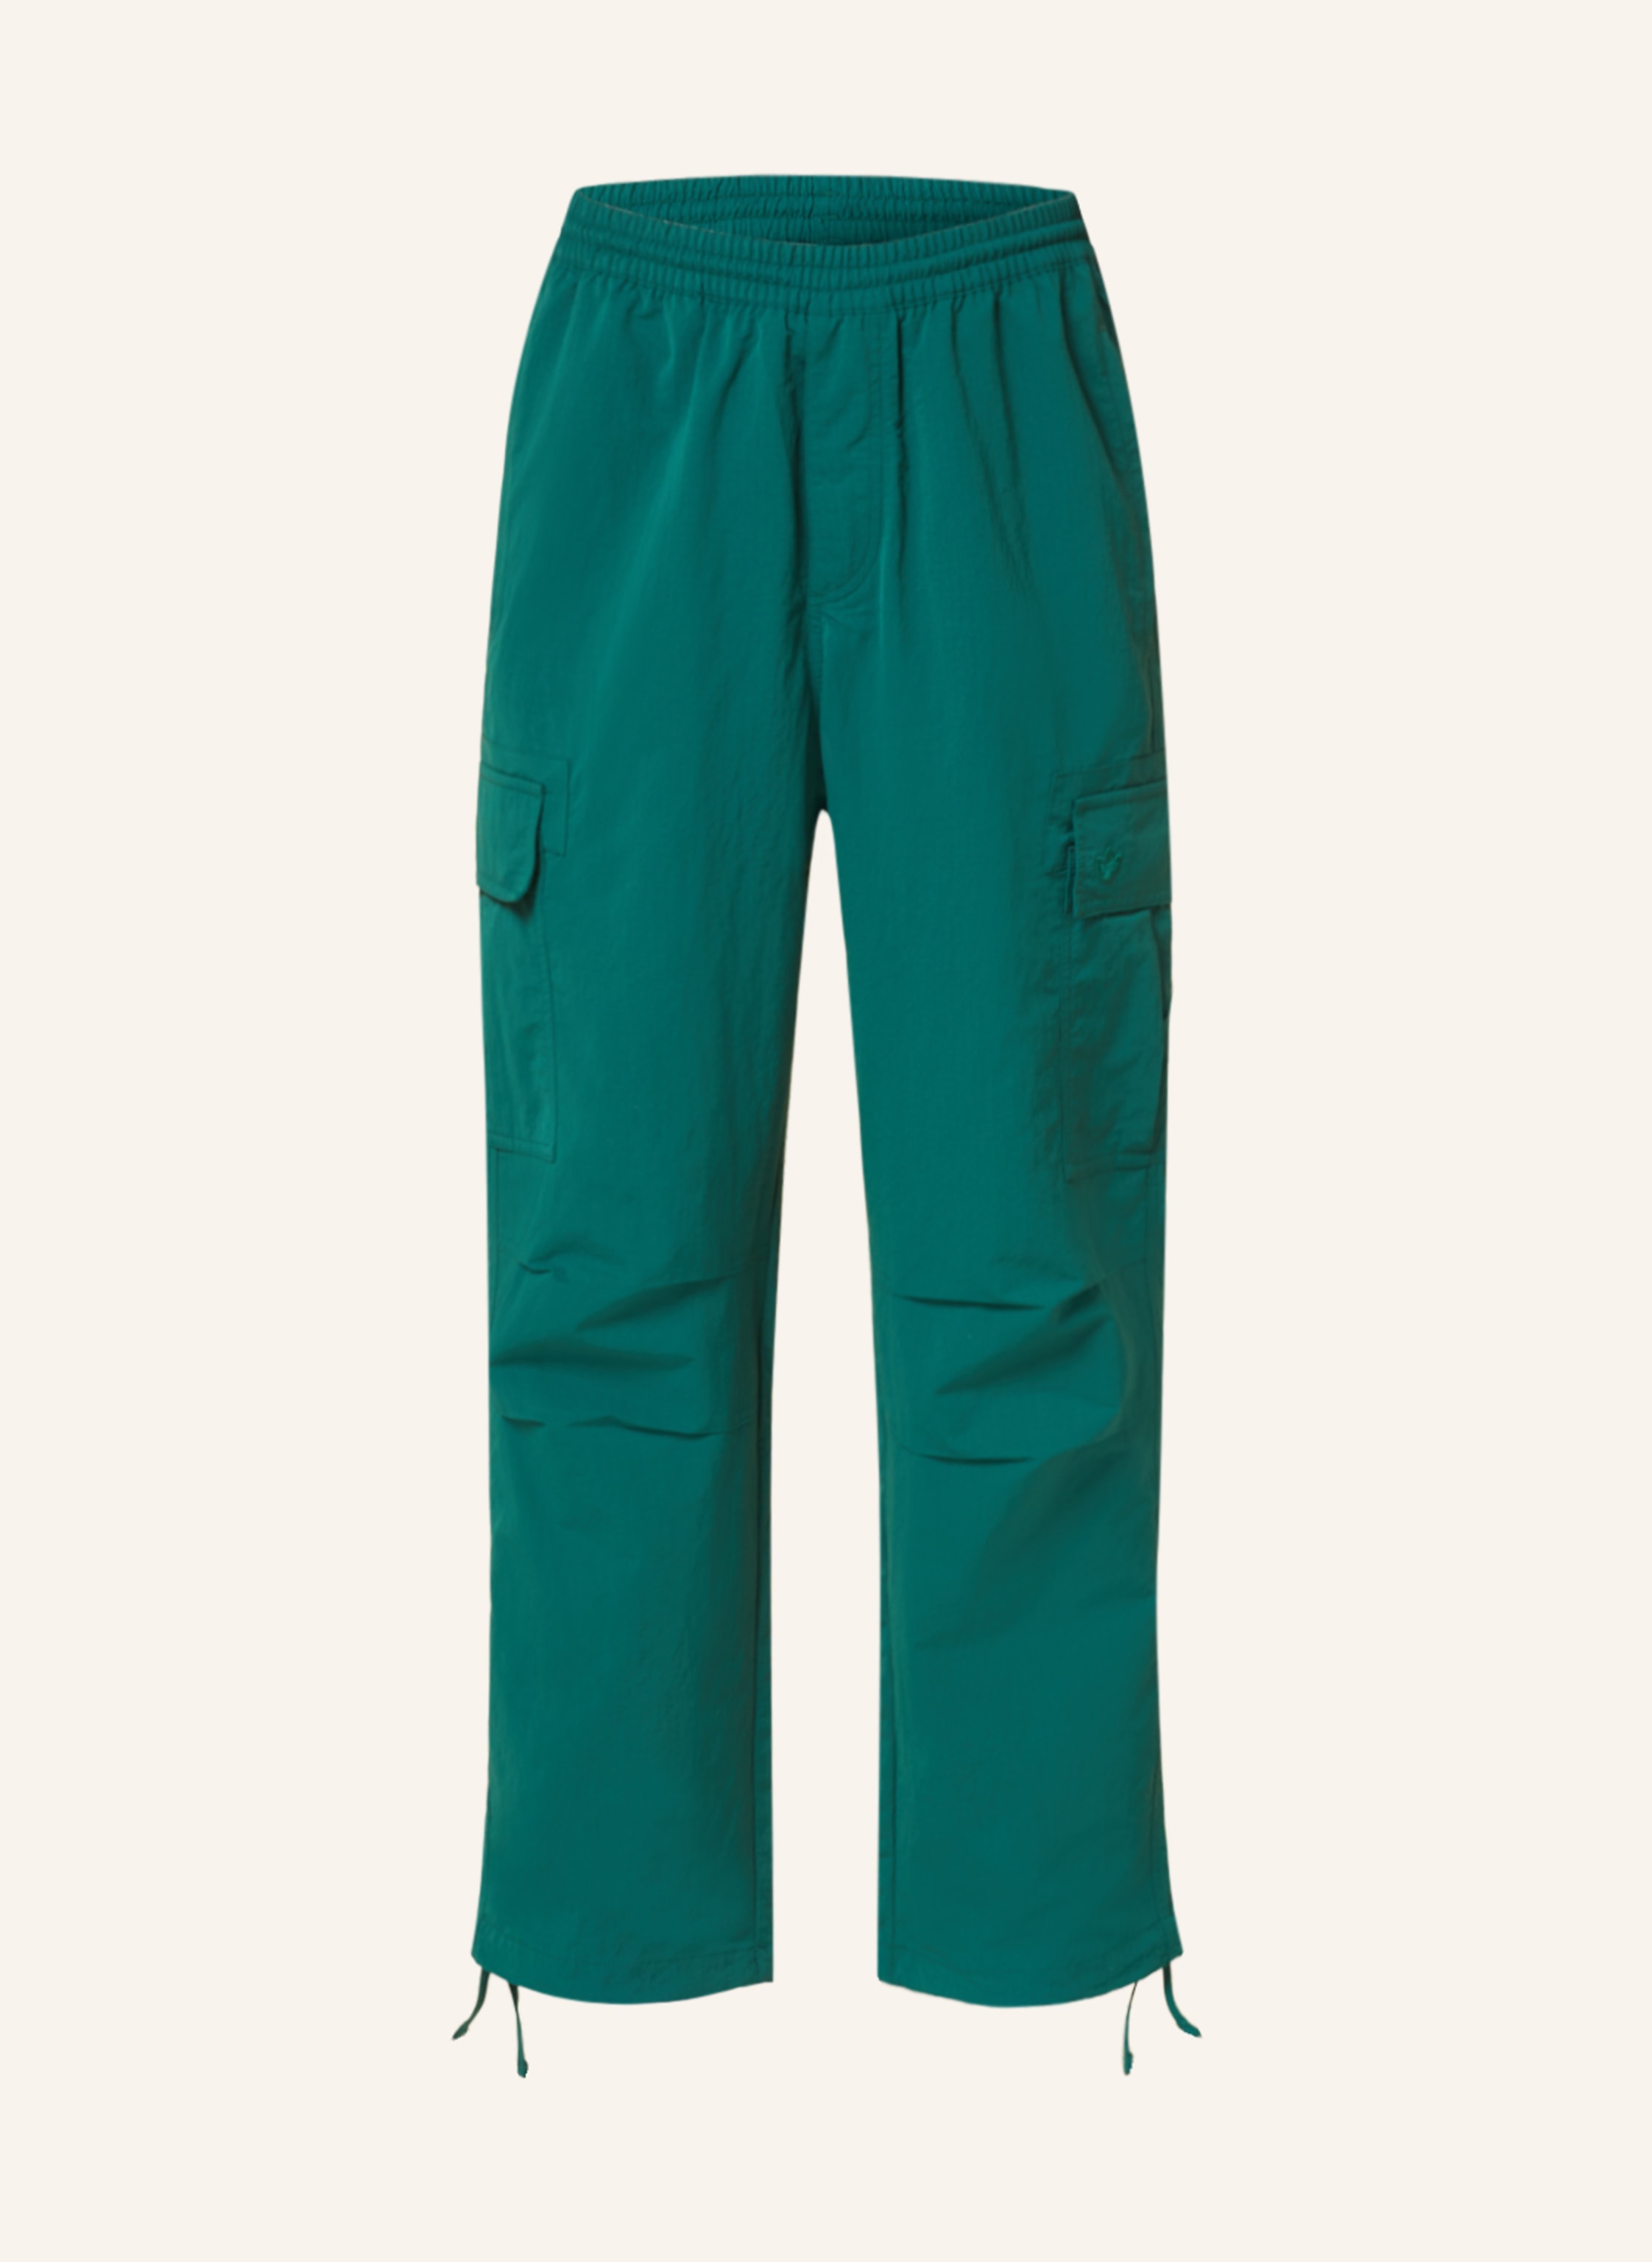 Cargo pants adidas Originals Premium Essentials Ripstop Trousers IT9031